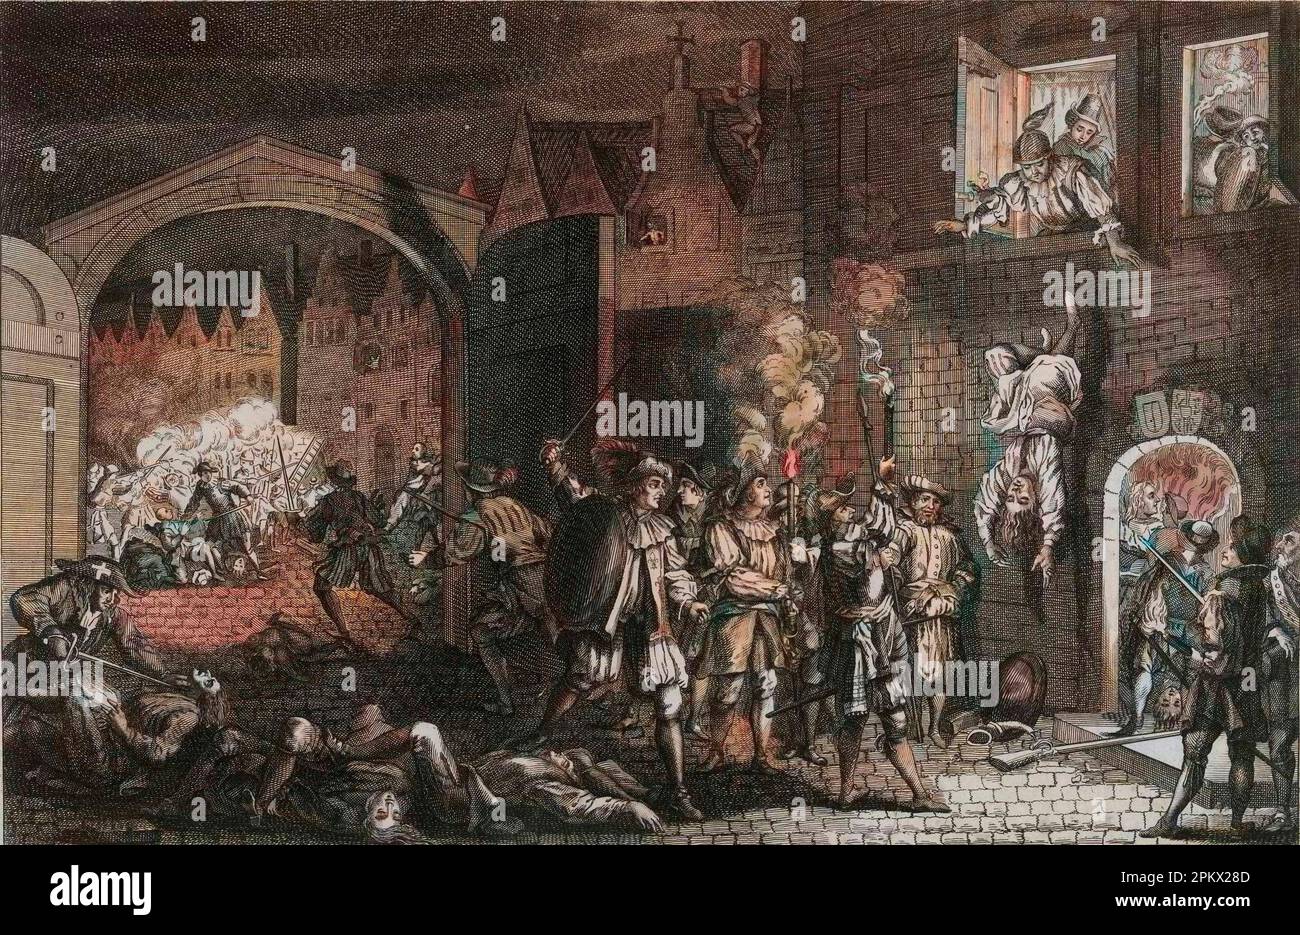 St. Bartholomew's Day Massacre - Massacre de la saint Barthelemy - Scène de la Saint Barthelemy dans les rues de Paris, en 1572. d'apres une Gravure du 16eme siecle Stockfoto